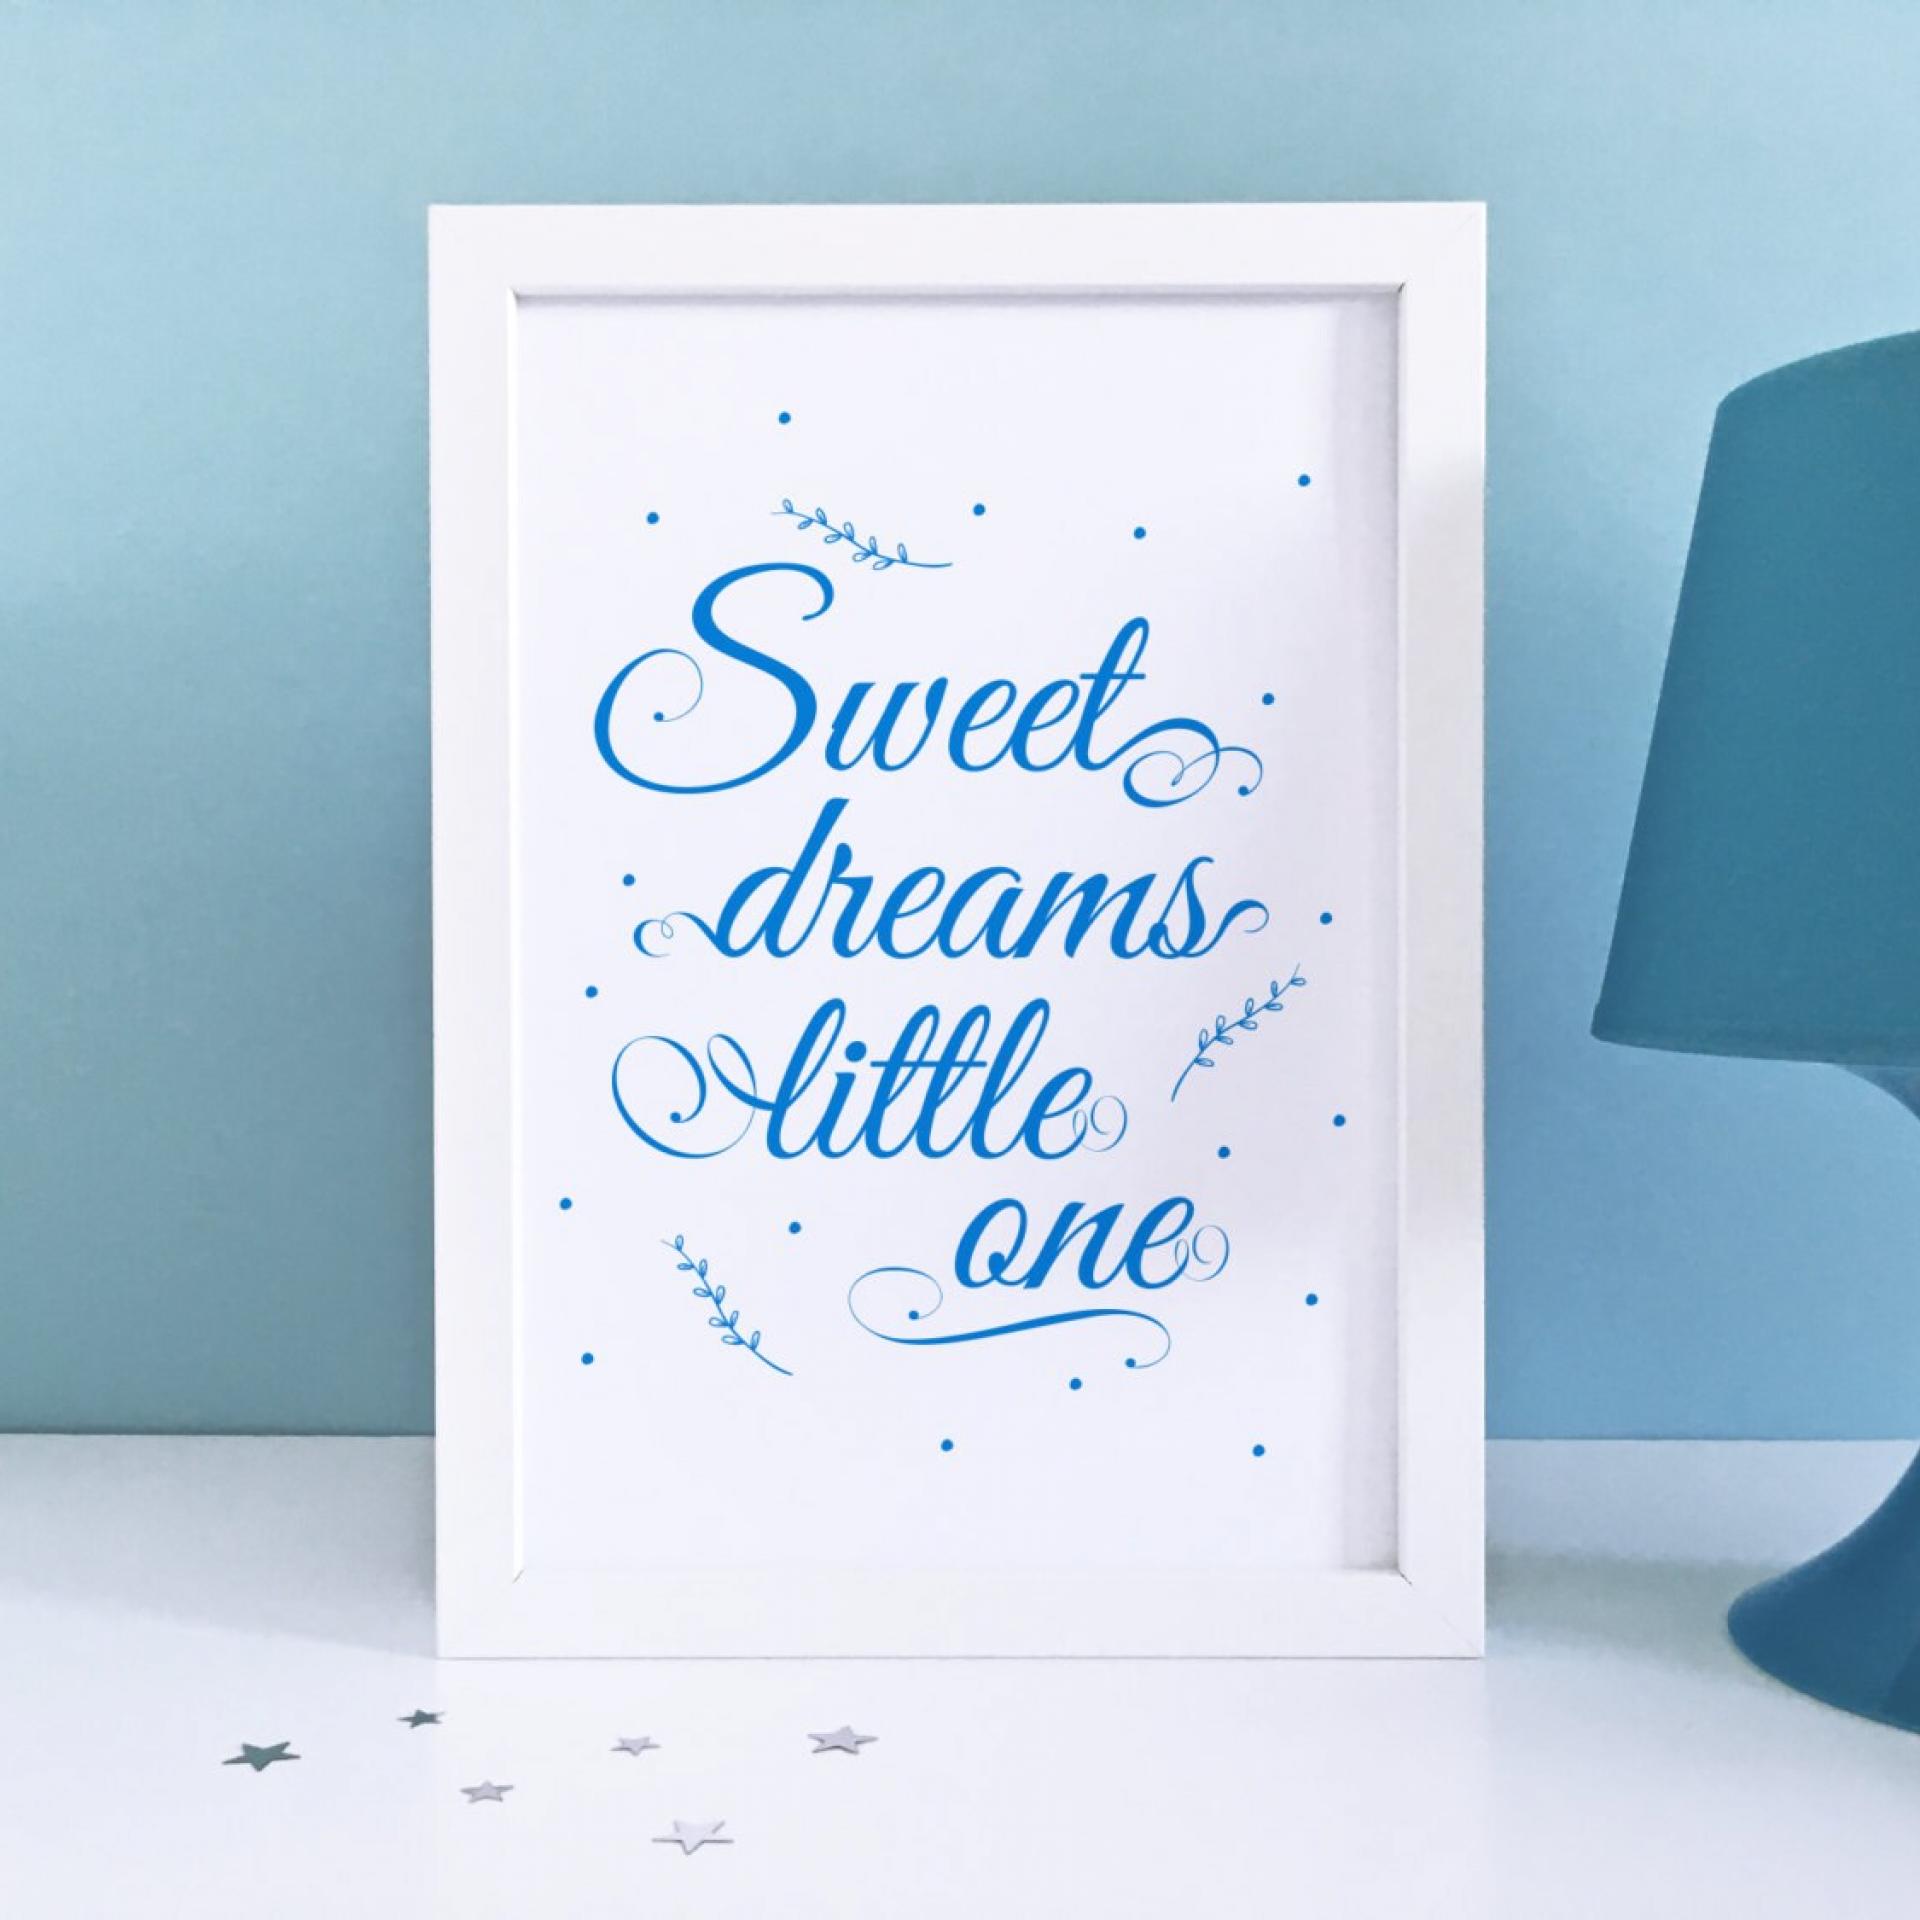 Sweet Dreams Print, Sweet Dreams Sign, Sweet Dreams Little One, Sweet Dreams Wall Art, Baby Art Print, Blue Nursery Decor, Nursery prints